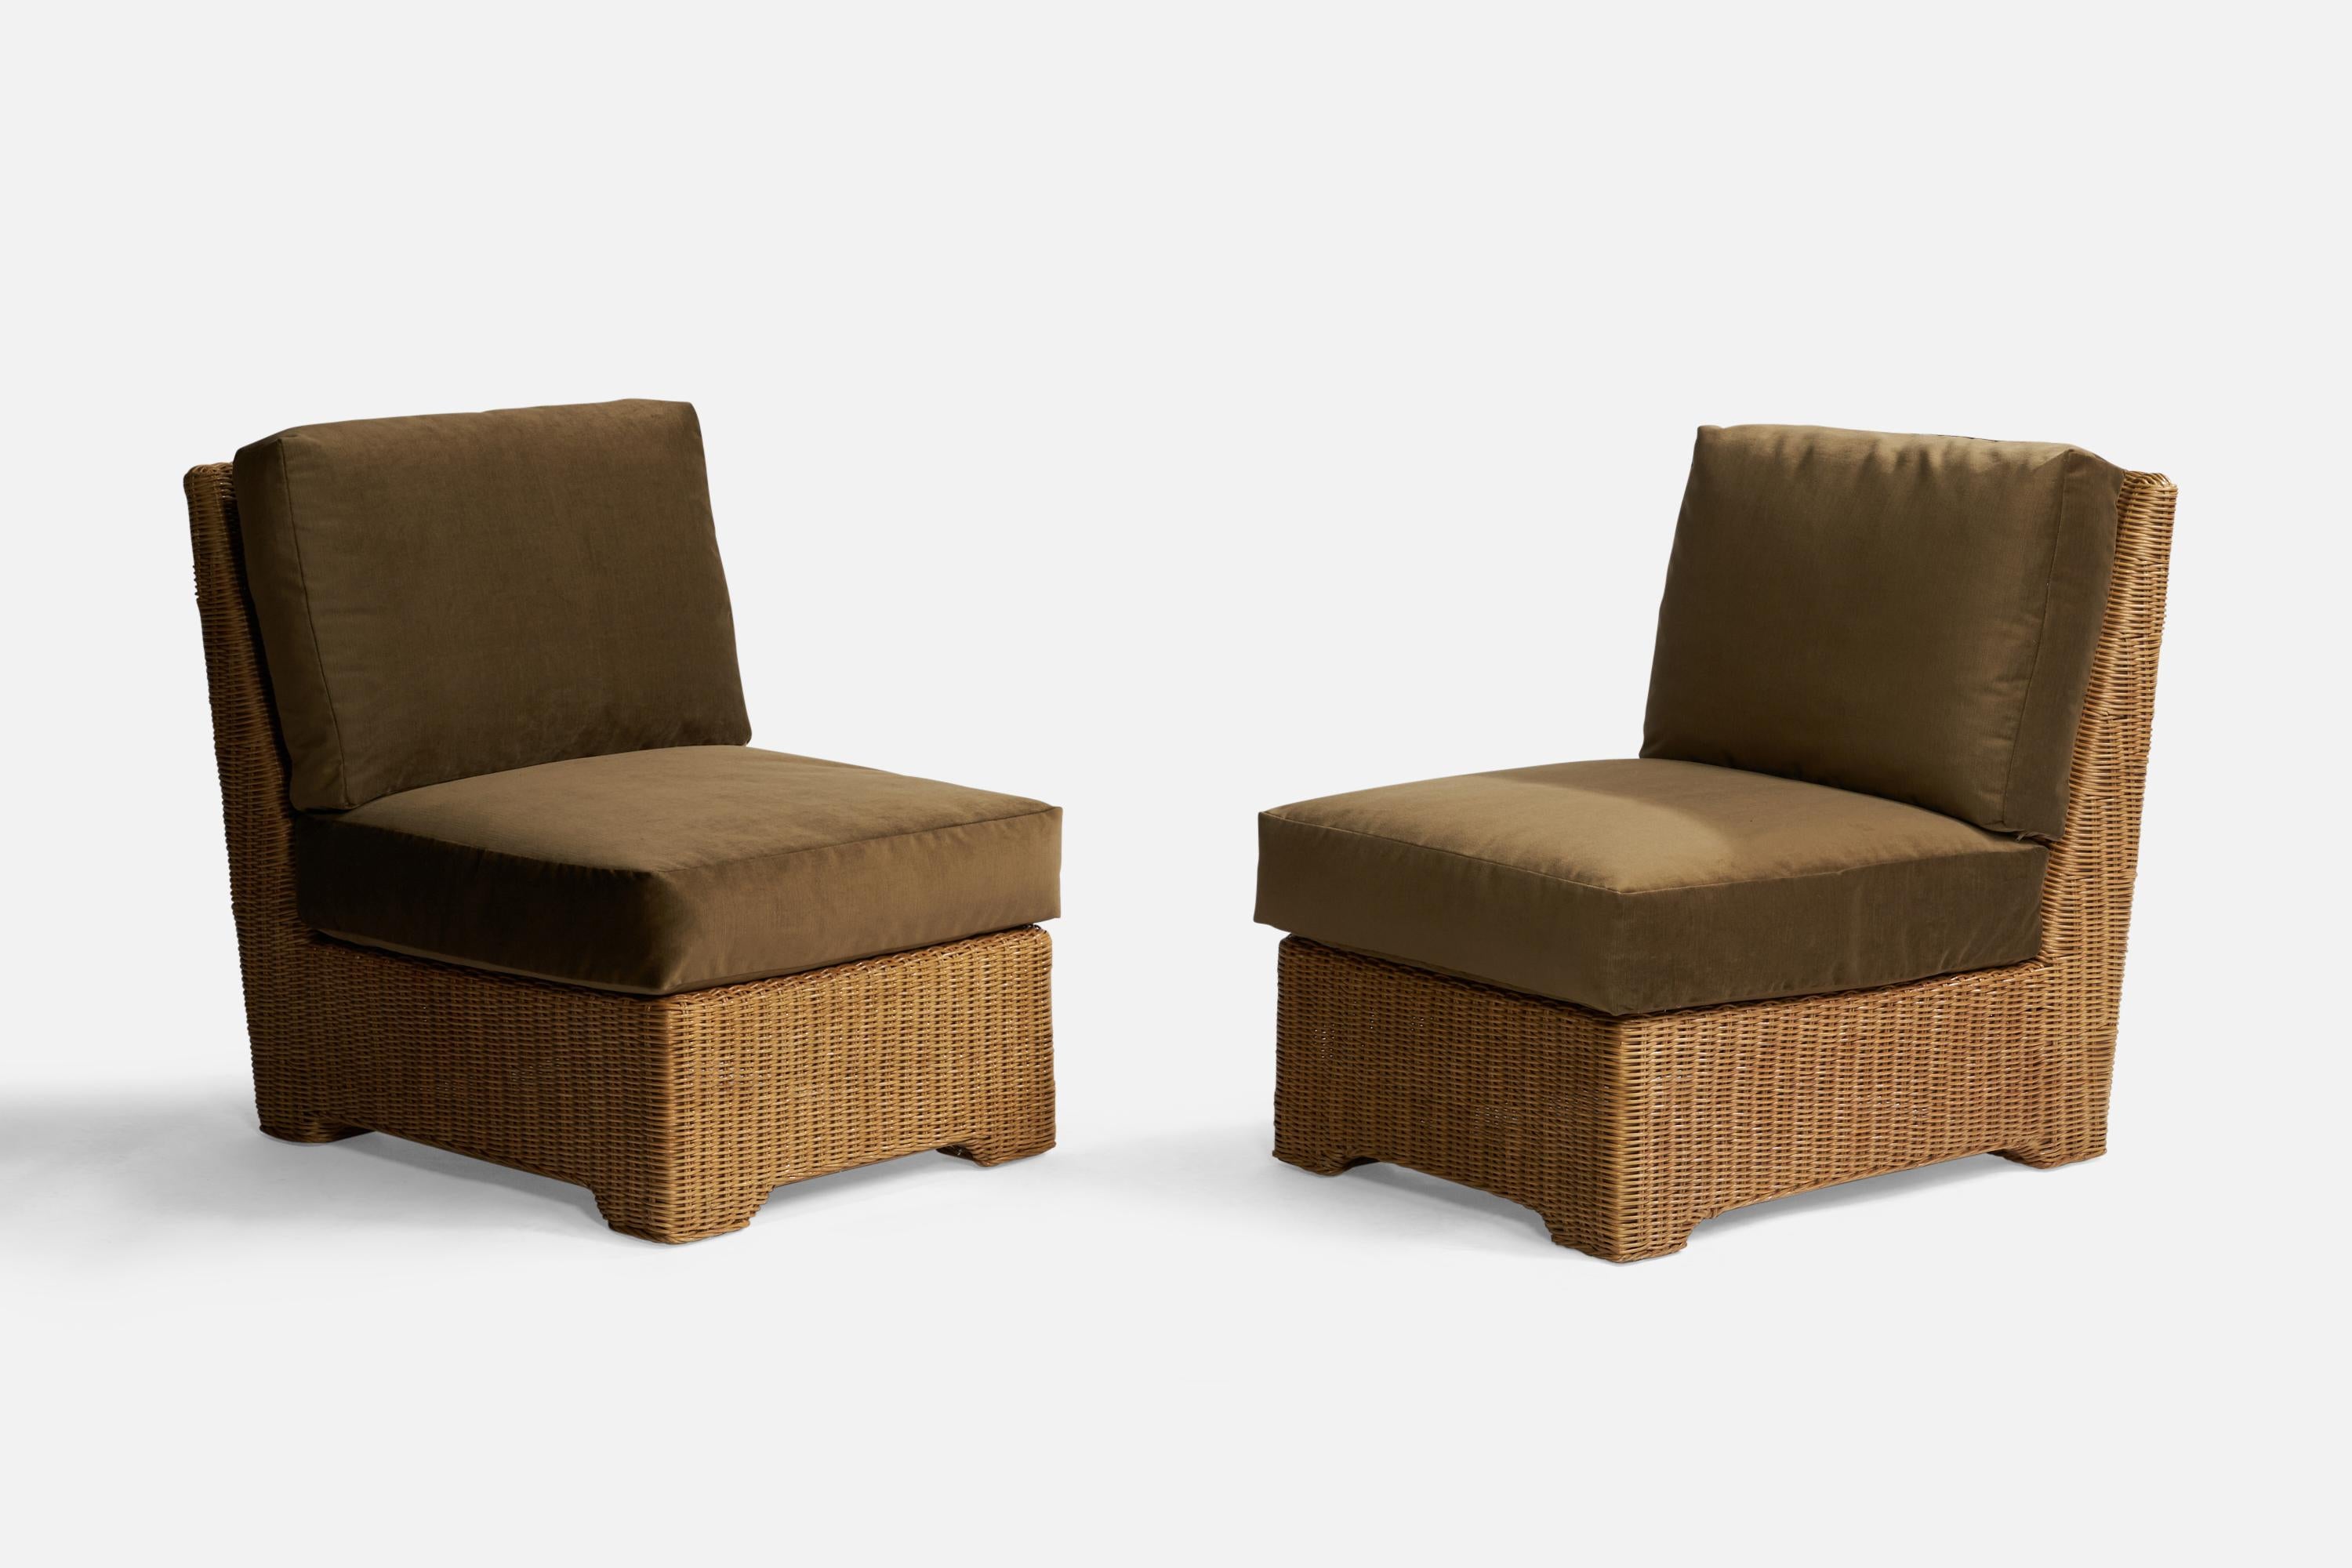 Paire de chaises longues en rotin et en tissu de velours vert, conçues et produites aux États-Unis, vers les années 1970.

Hauteur du siège : 18